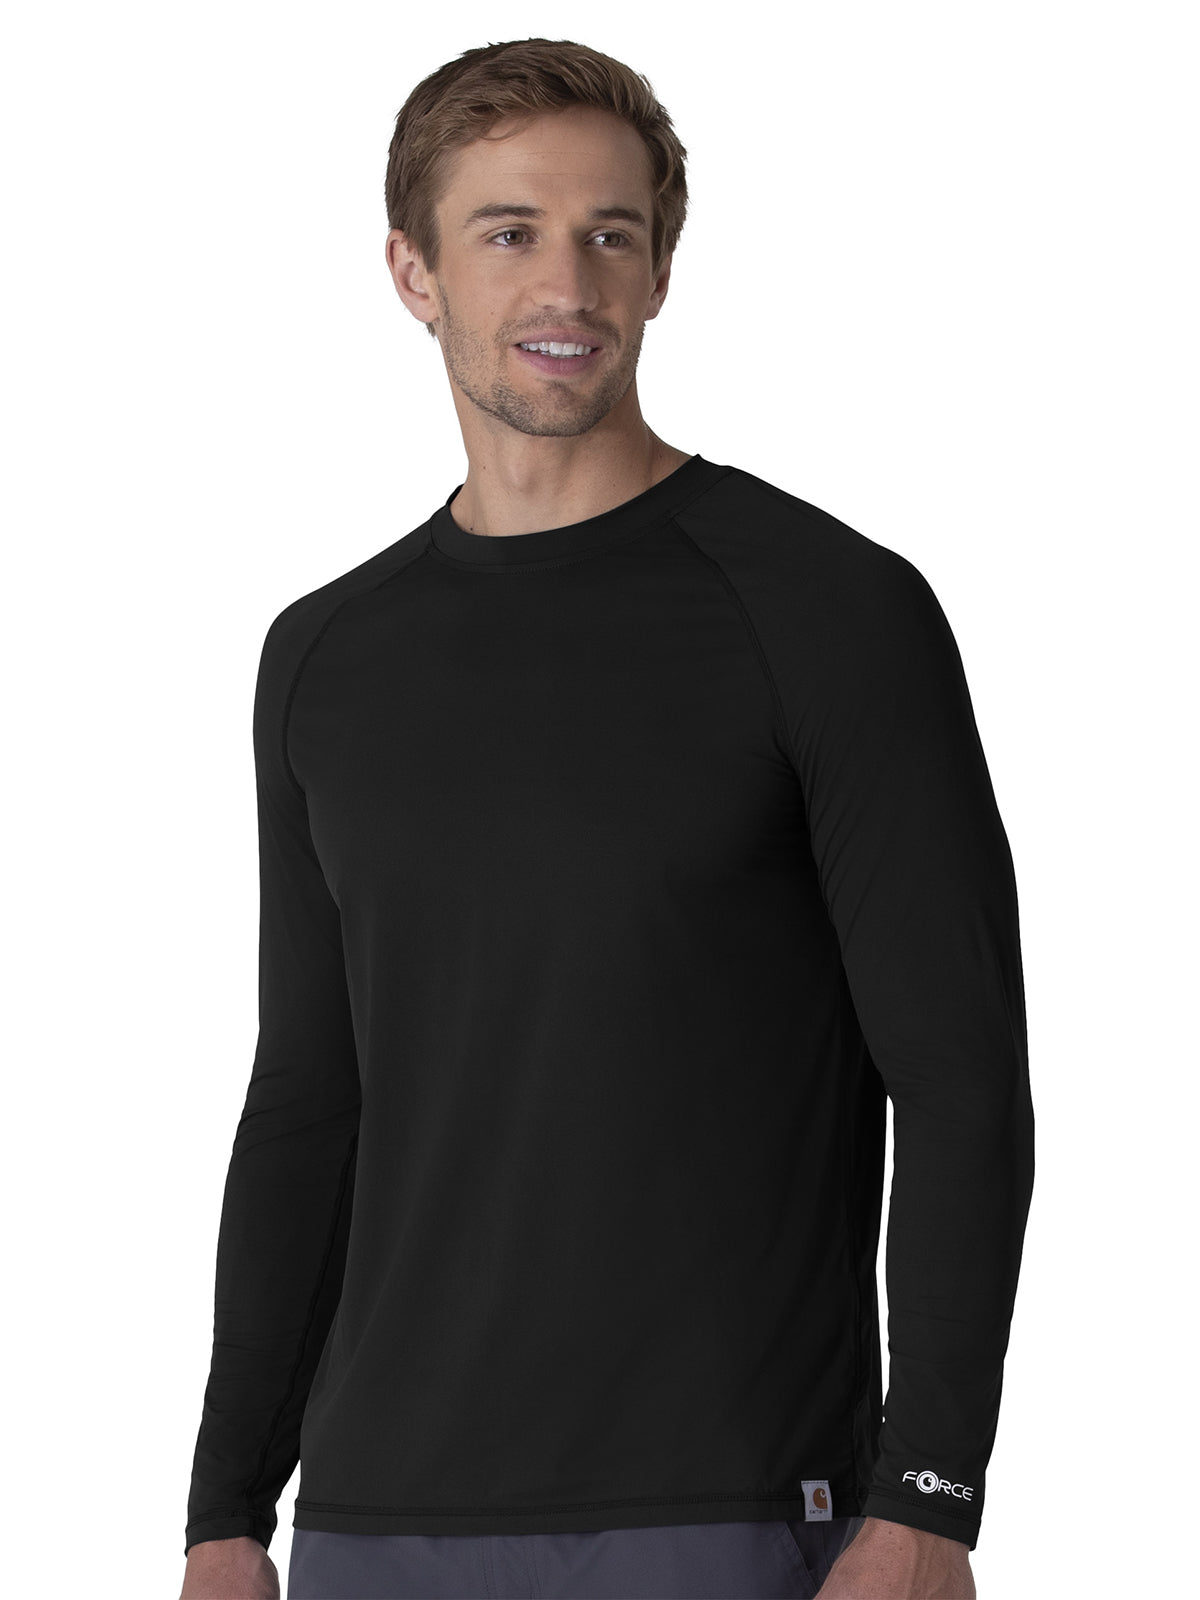 Men's Modern Fit Long Sleeve Tee - C32002 - Black